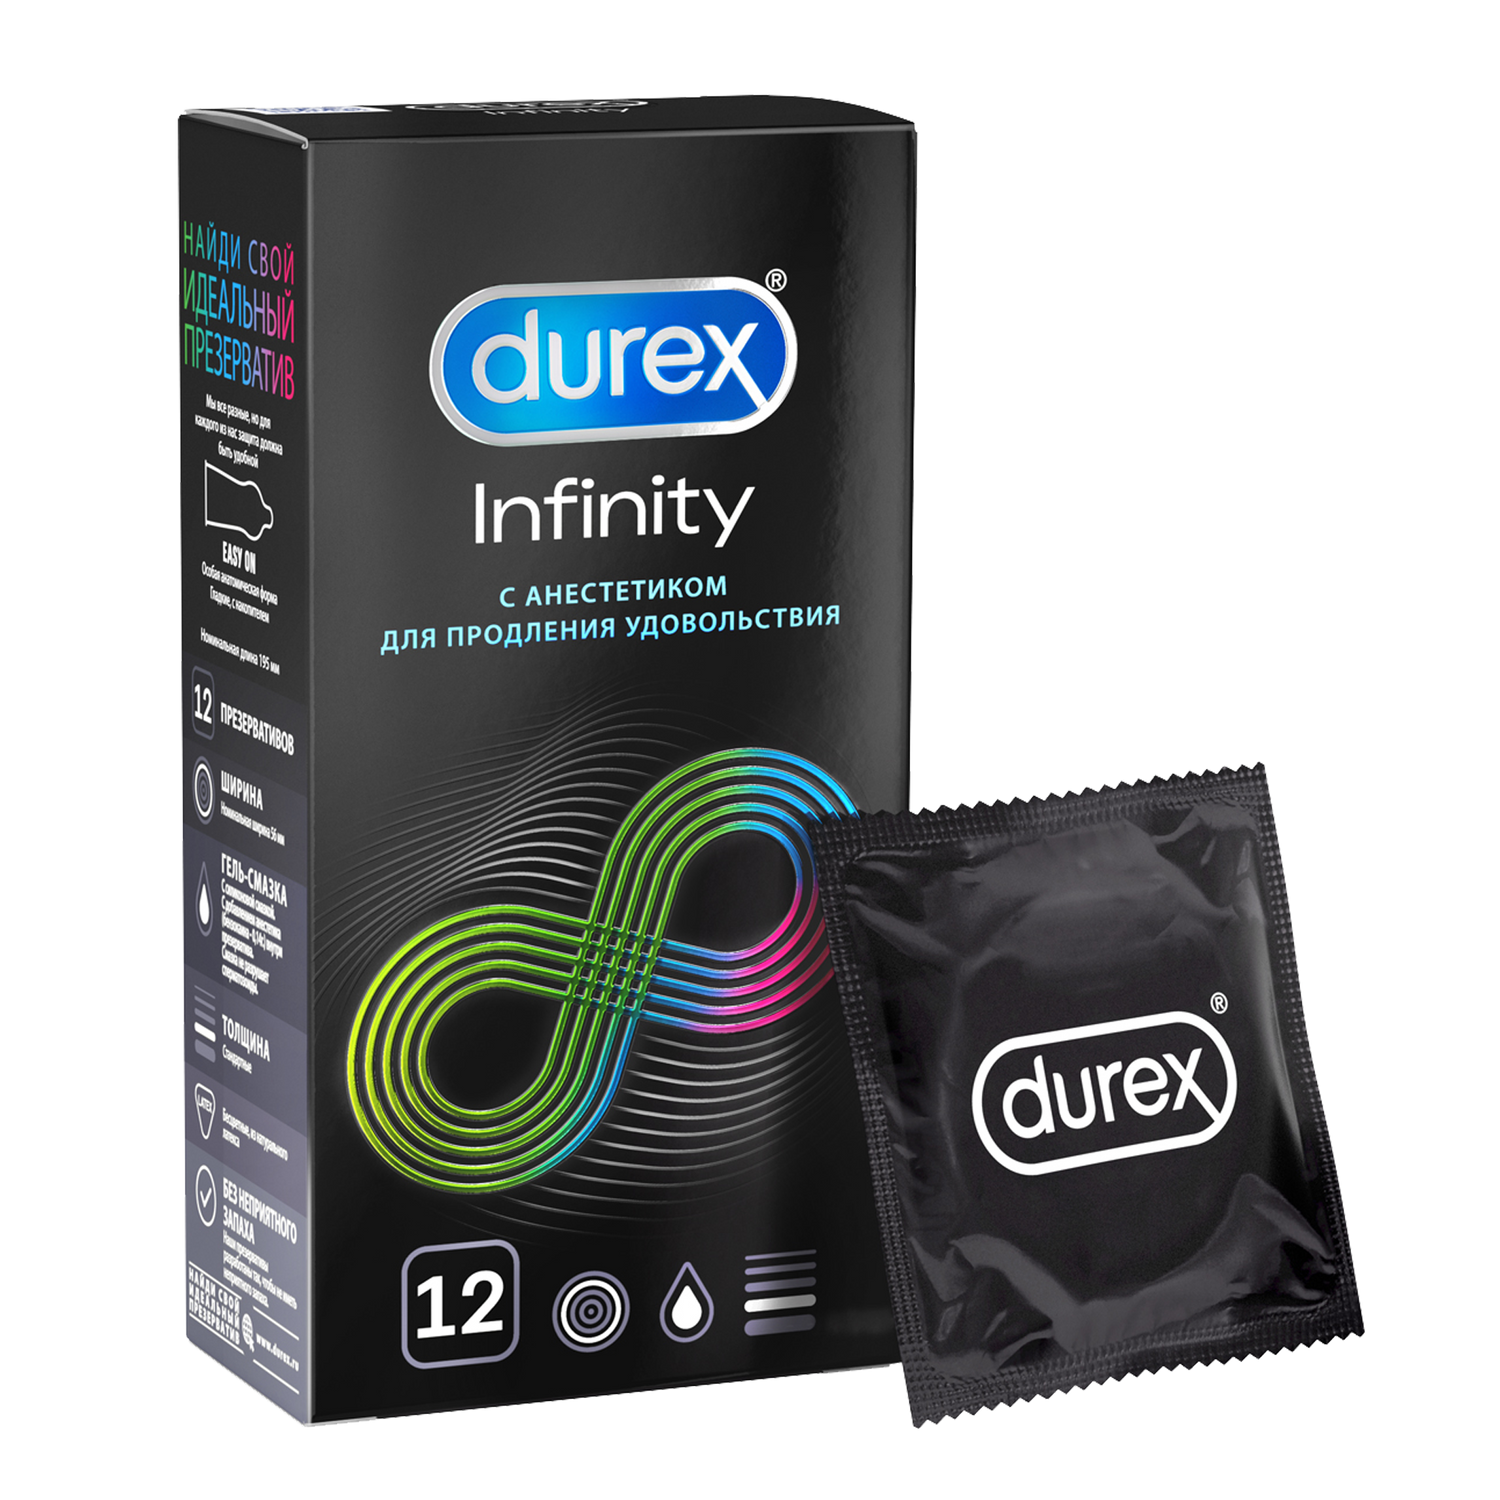 Презервативы Durex Infinity гладкие с анестетиком, 12 шт. дюрекс презервативы инфинити с анестетиком 3